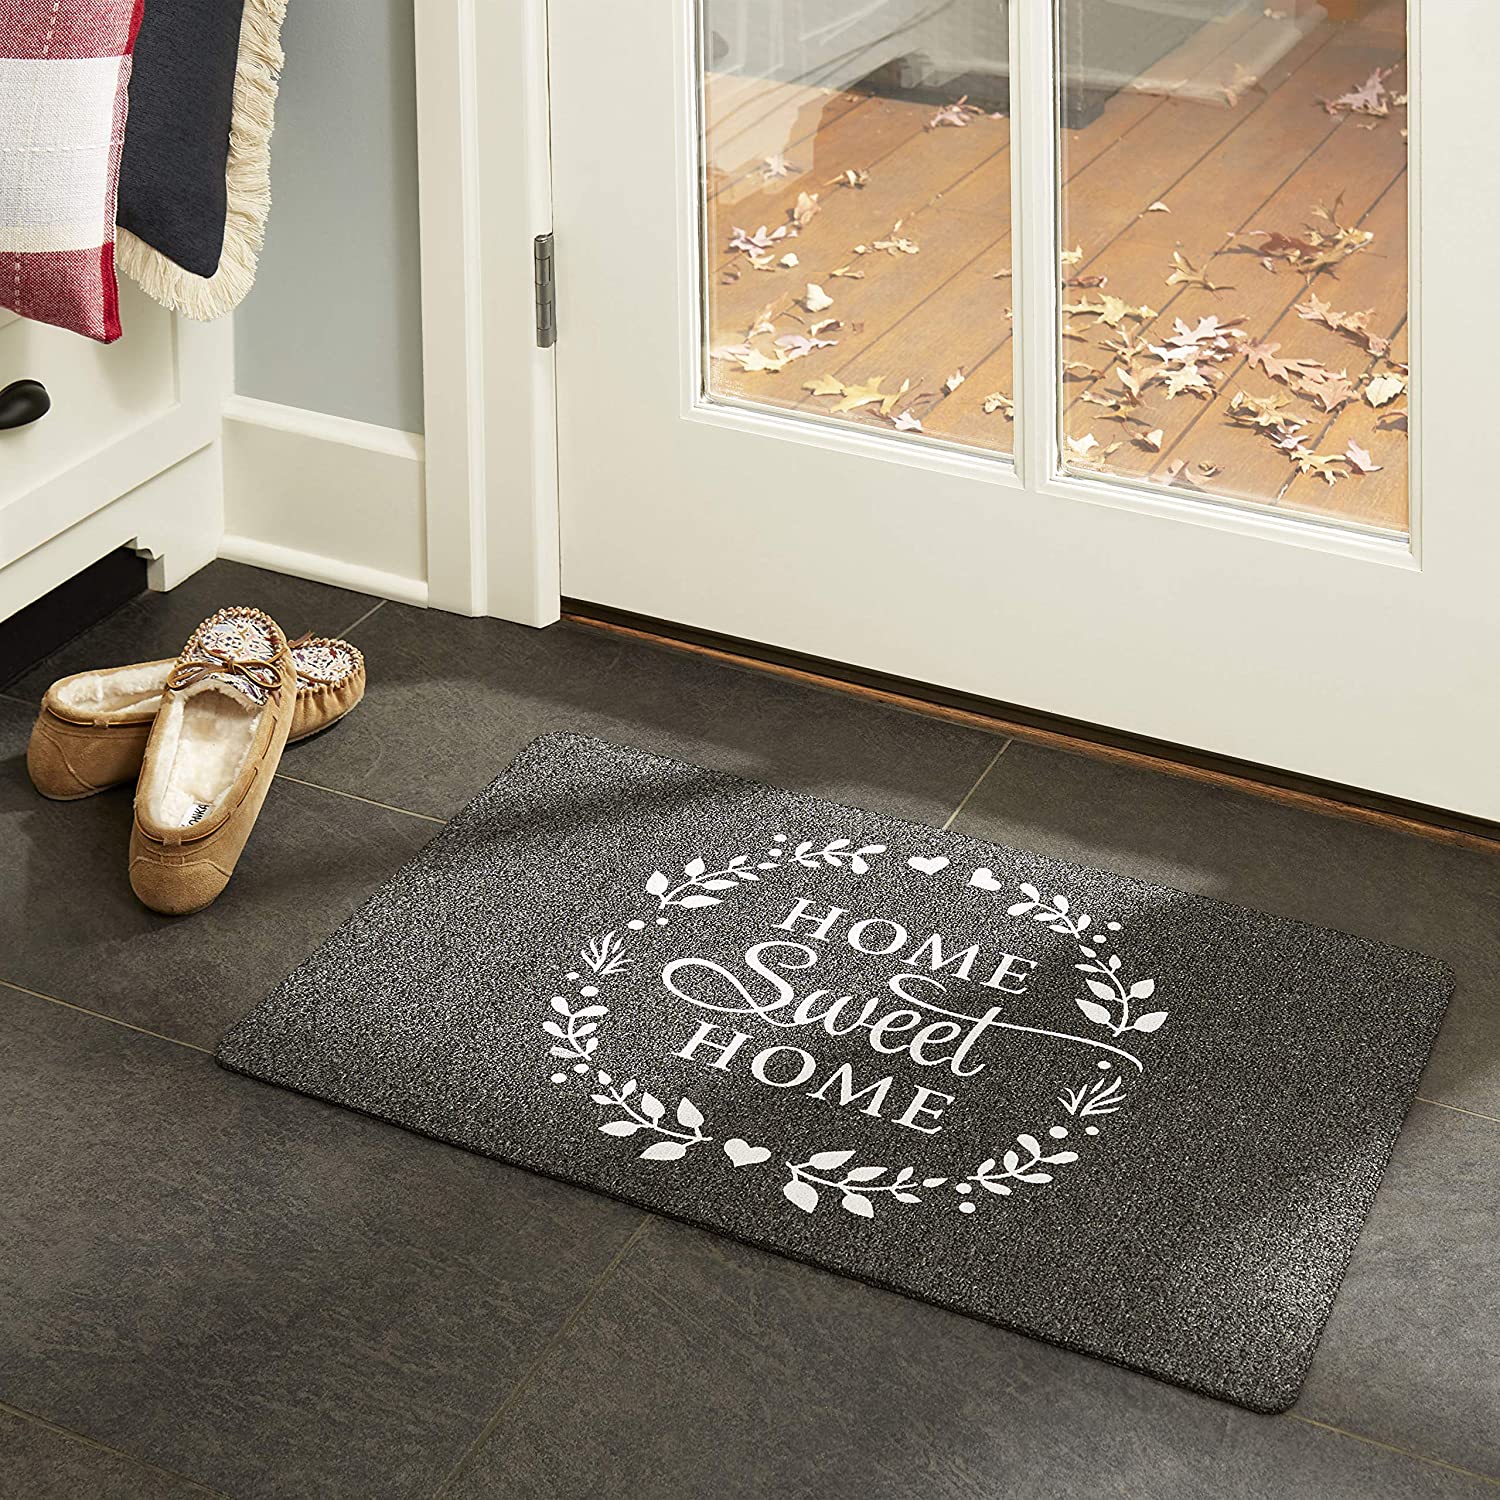 Home Sweet Home Outdoor Rubber Doormat 18" x 30"